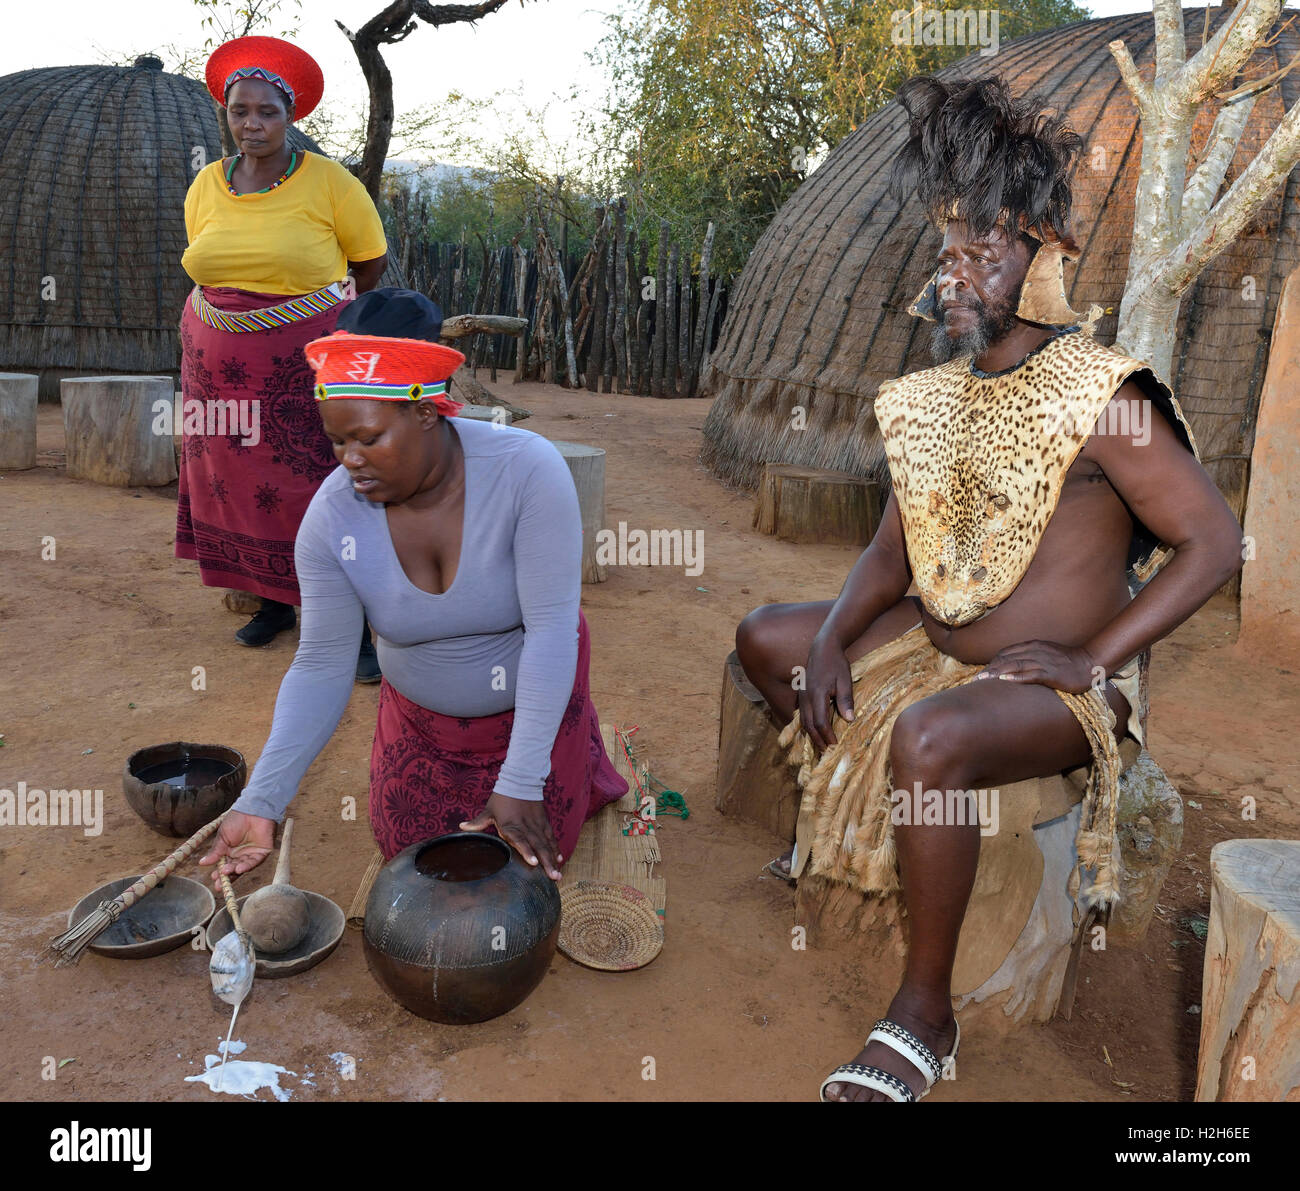 Les membres de la troupe de Shakaland Zulu réactivent la vie domestique de Zulu - servant de l'amasi (lait caillé), avec le roi de Zulu assis. Eshowe, Afrique du Sud Banque D'Images